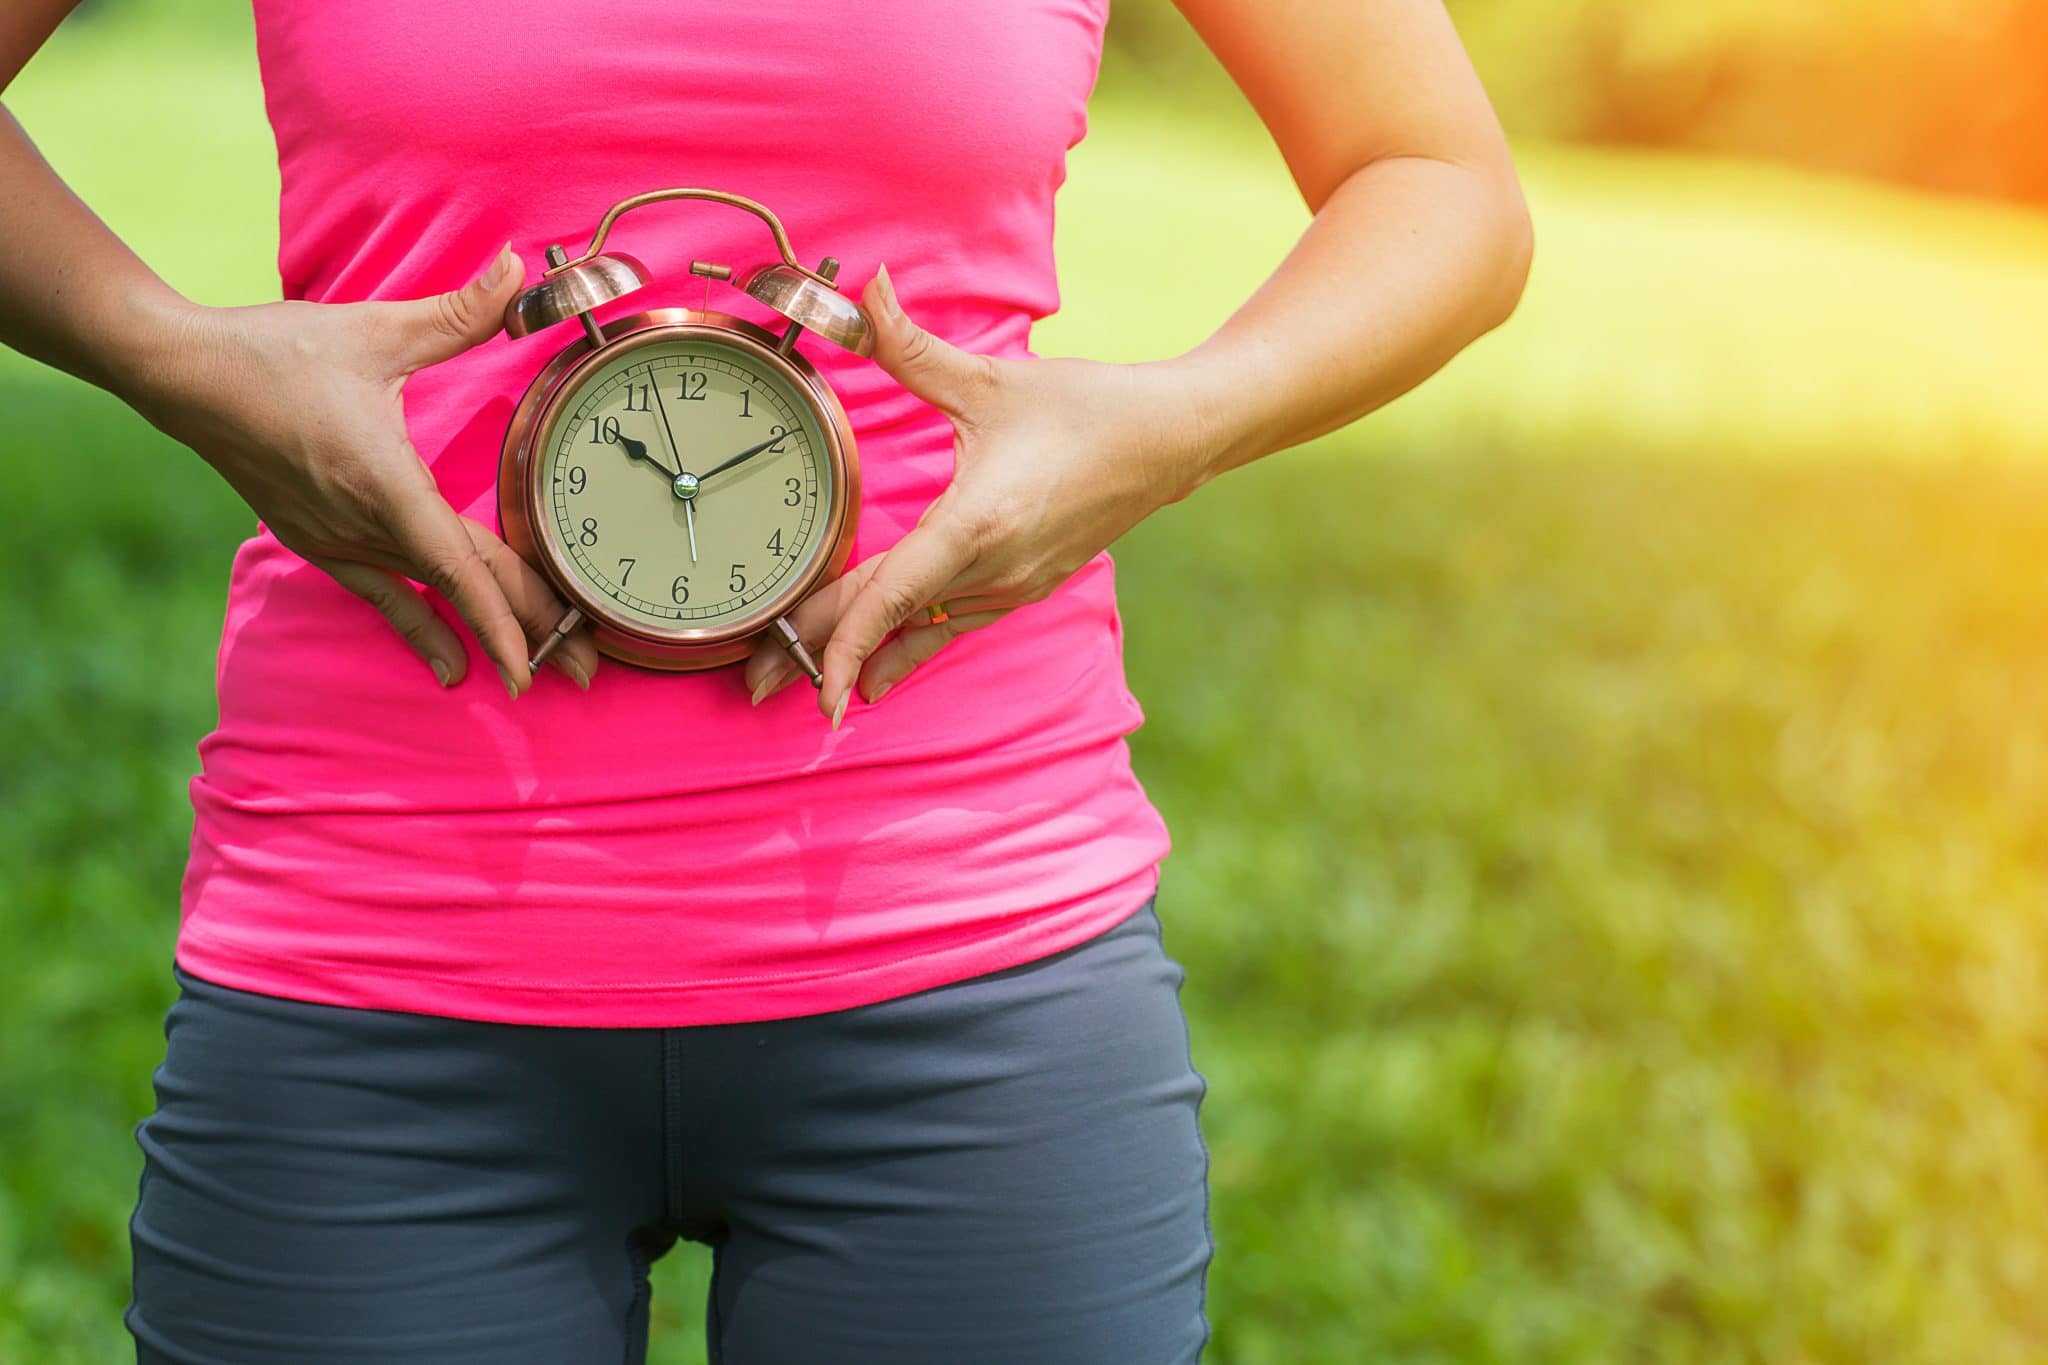 Femme tenant une horloge sur le ventre, symbolisant peut-être la durée des règles ou le cycle menstruel.